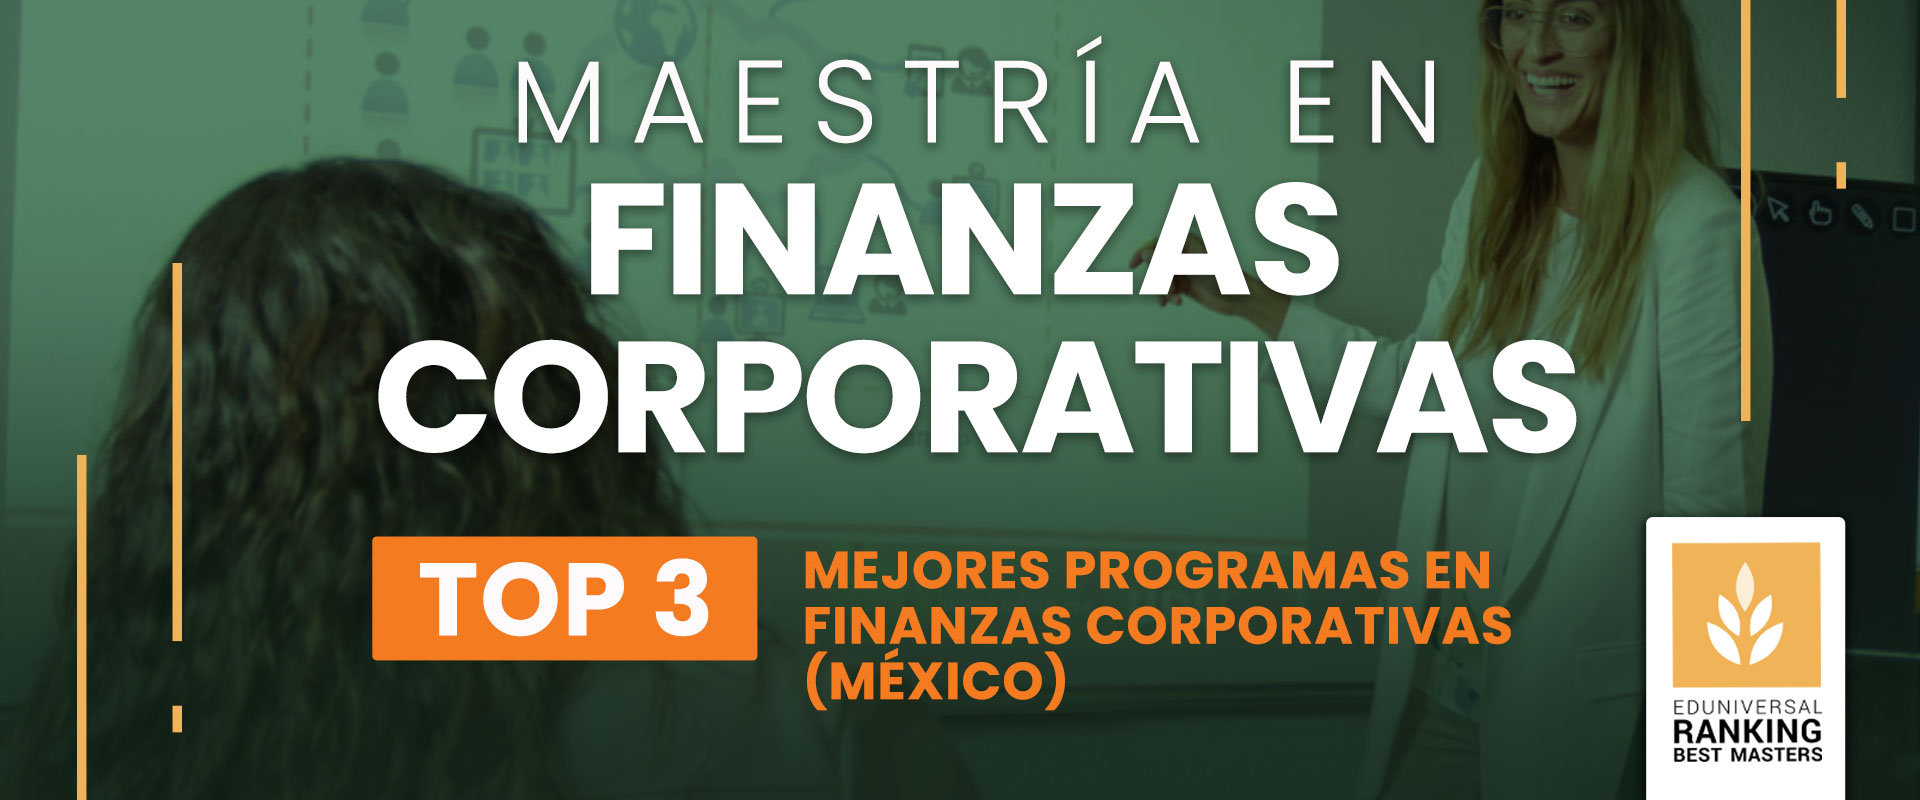 Maestría en Finanzas Corporativas - Universidad de las Américas Puebla (UDLAP)